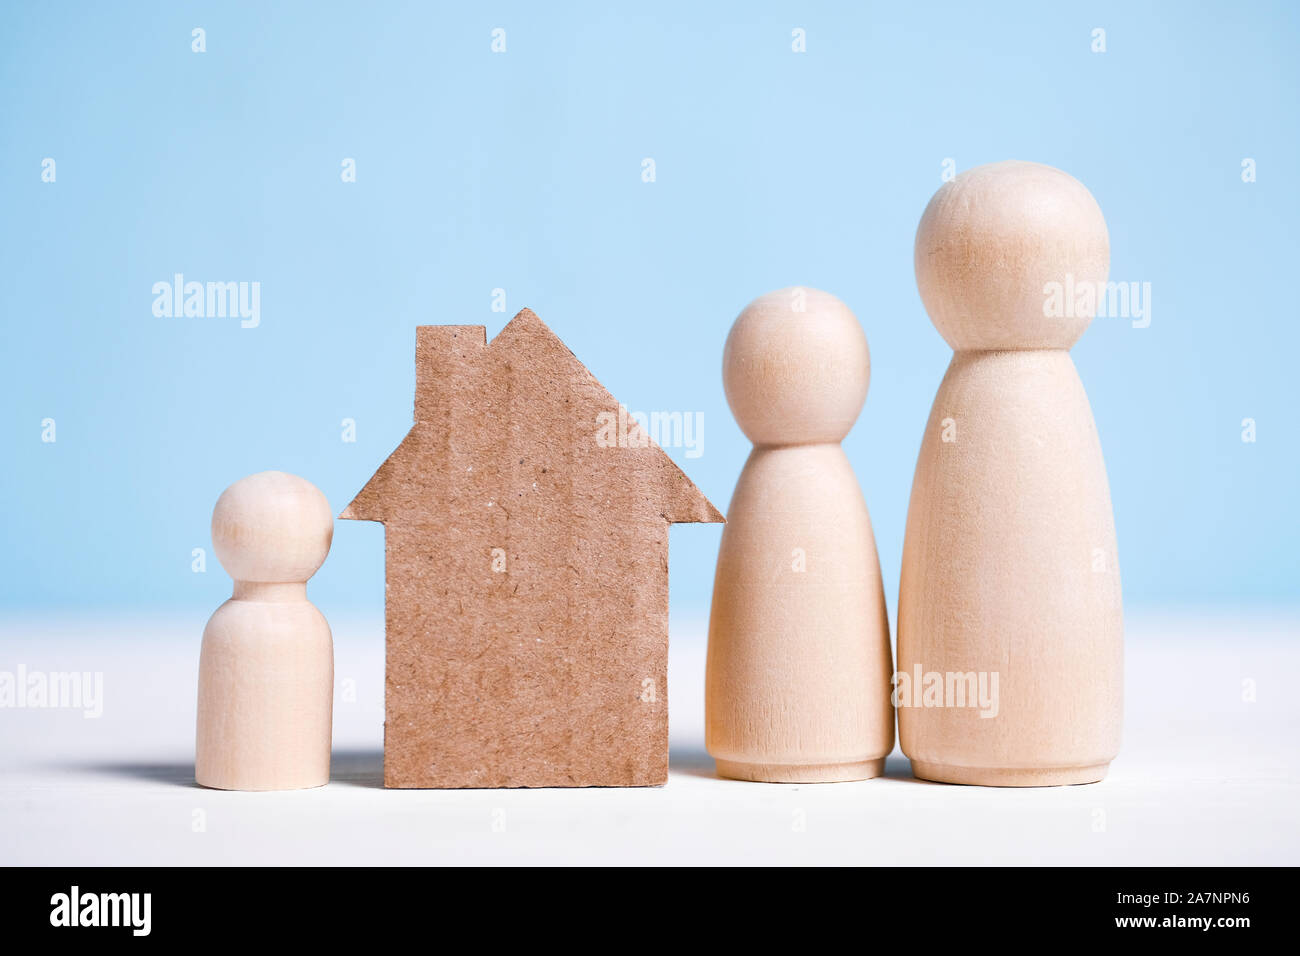 Abstract maison en carton près de la famille : maman, papa, bébé. Accueil Concept de propriété collective. Close up. Banque D'Images